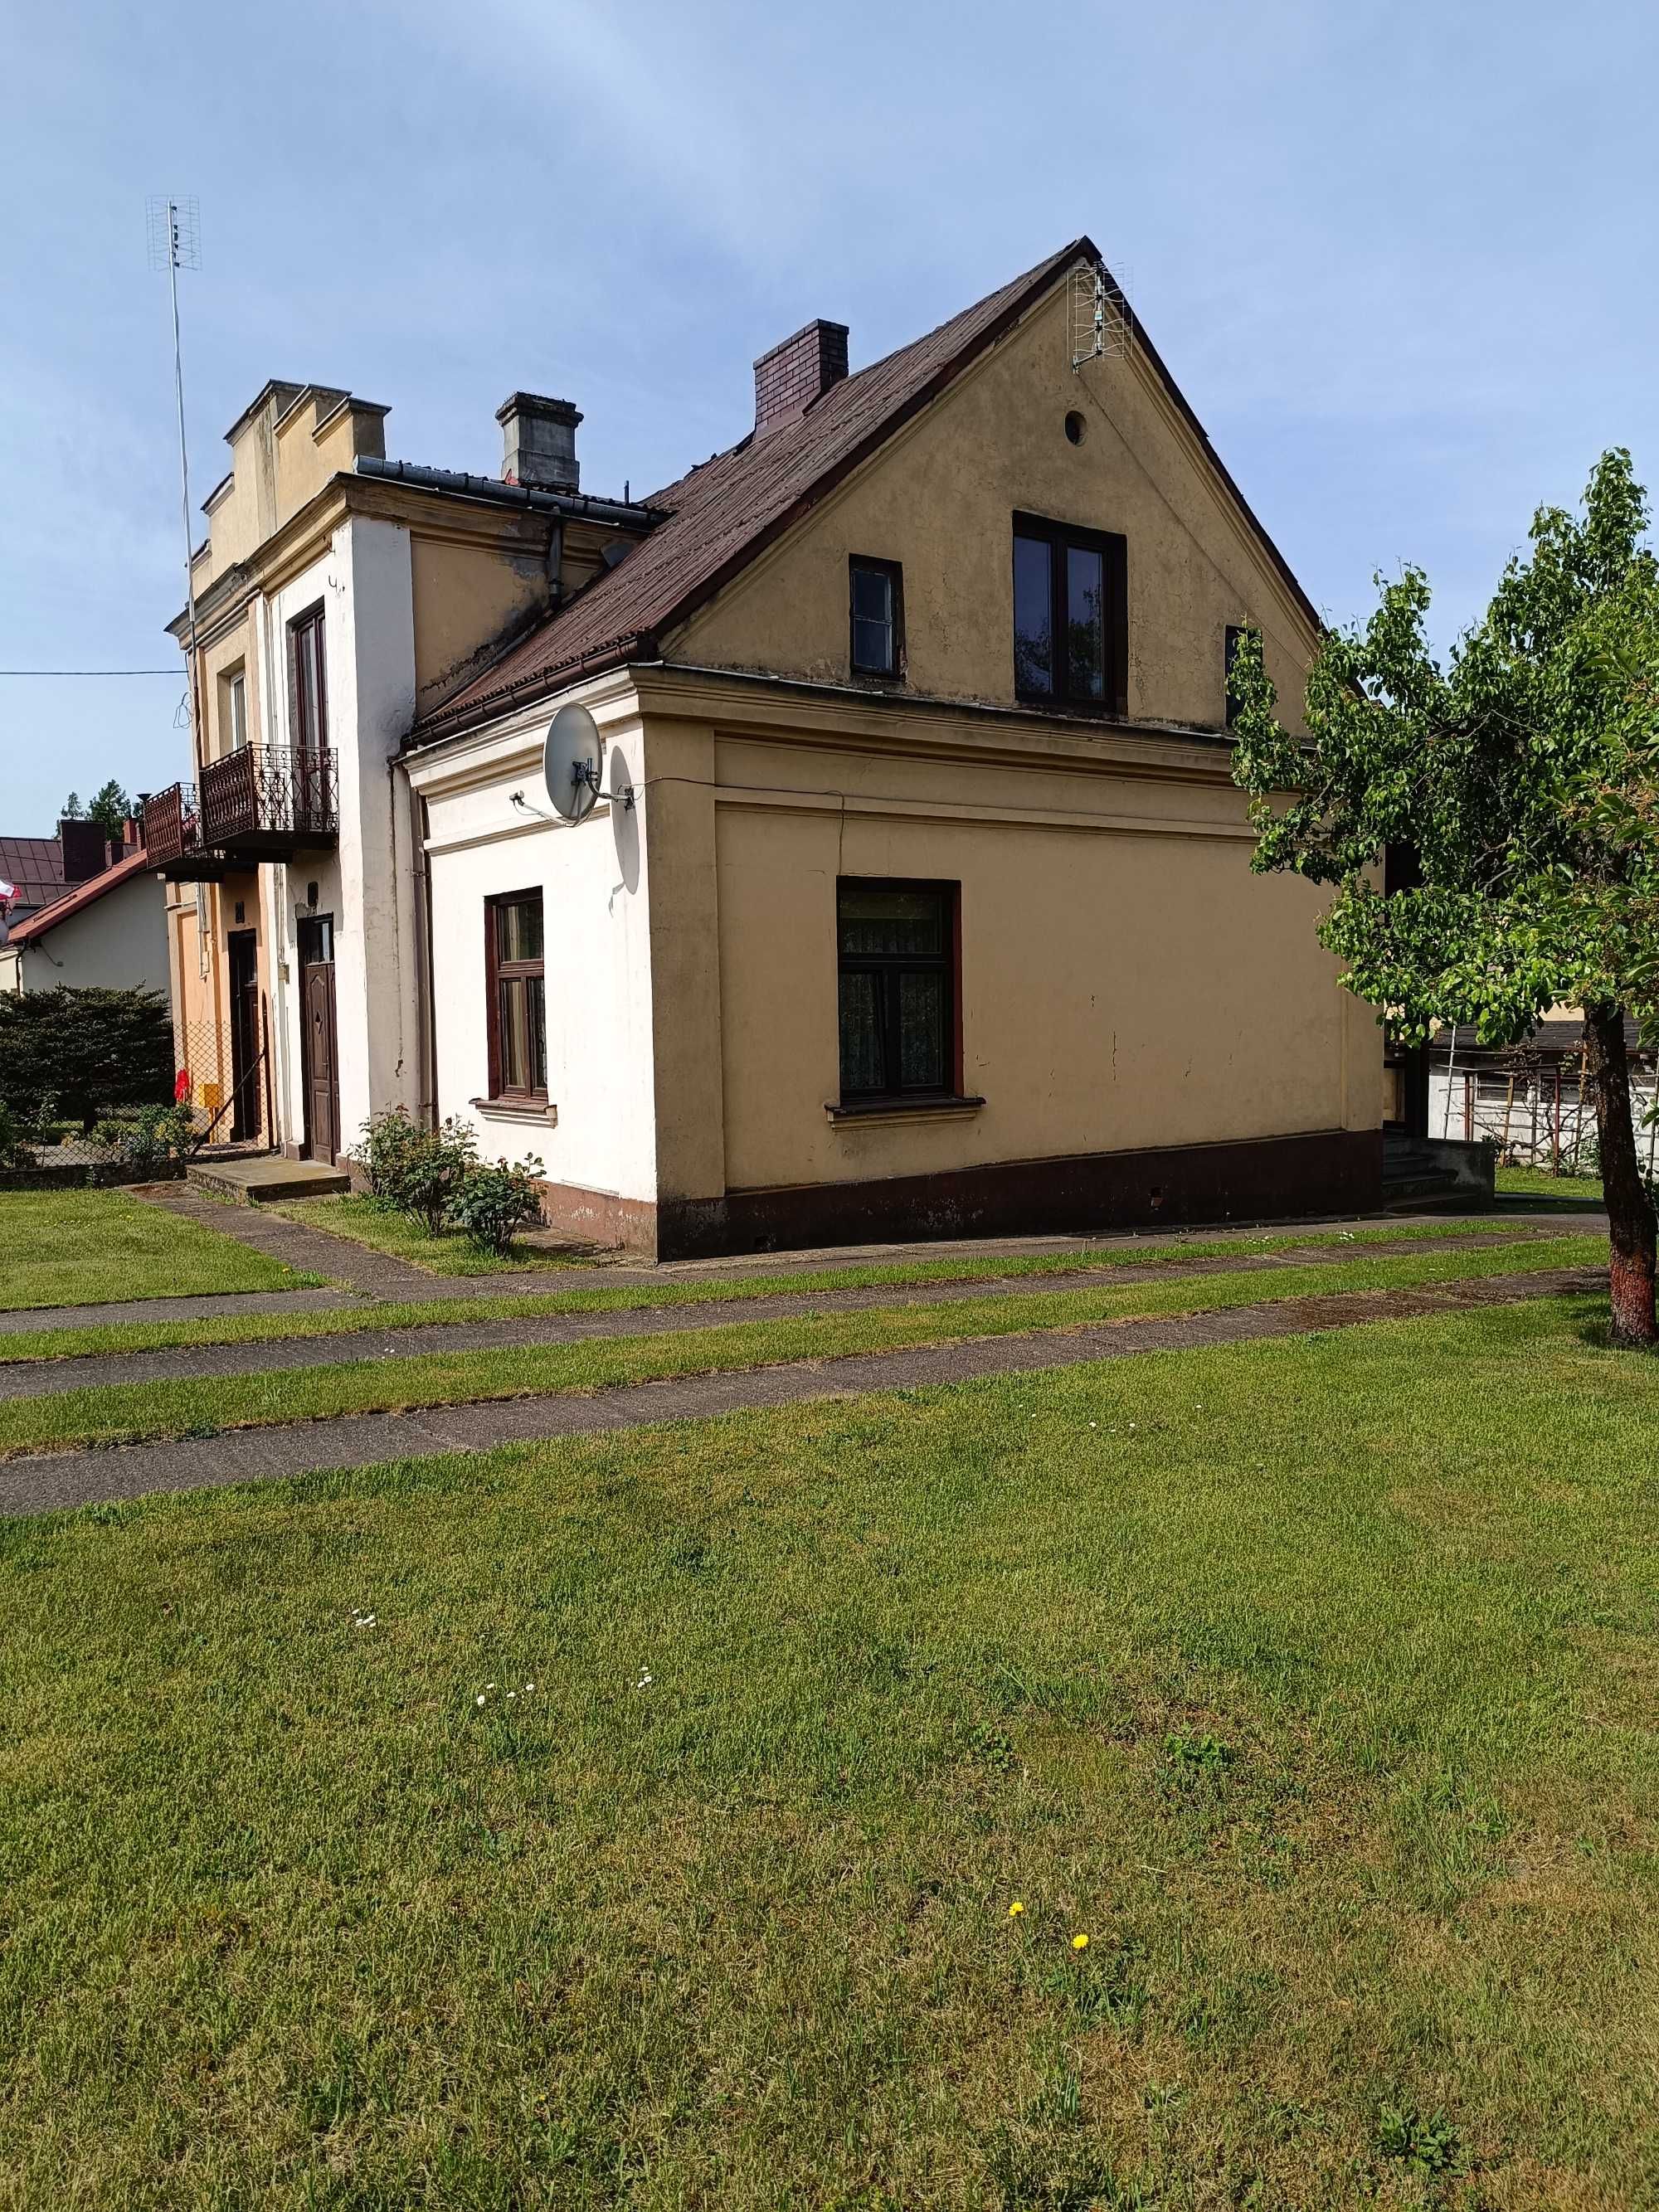 Dom na sprzedaż w centrum Skierniewic, działka 873m²